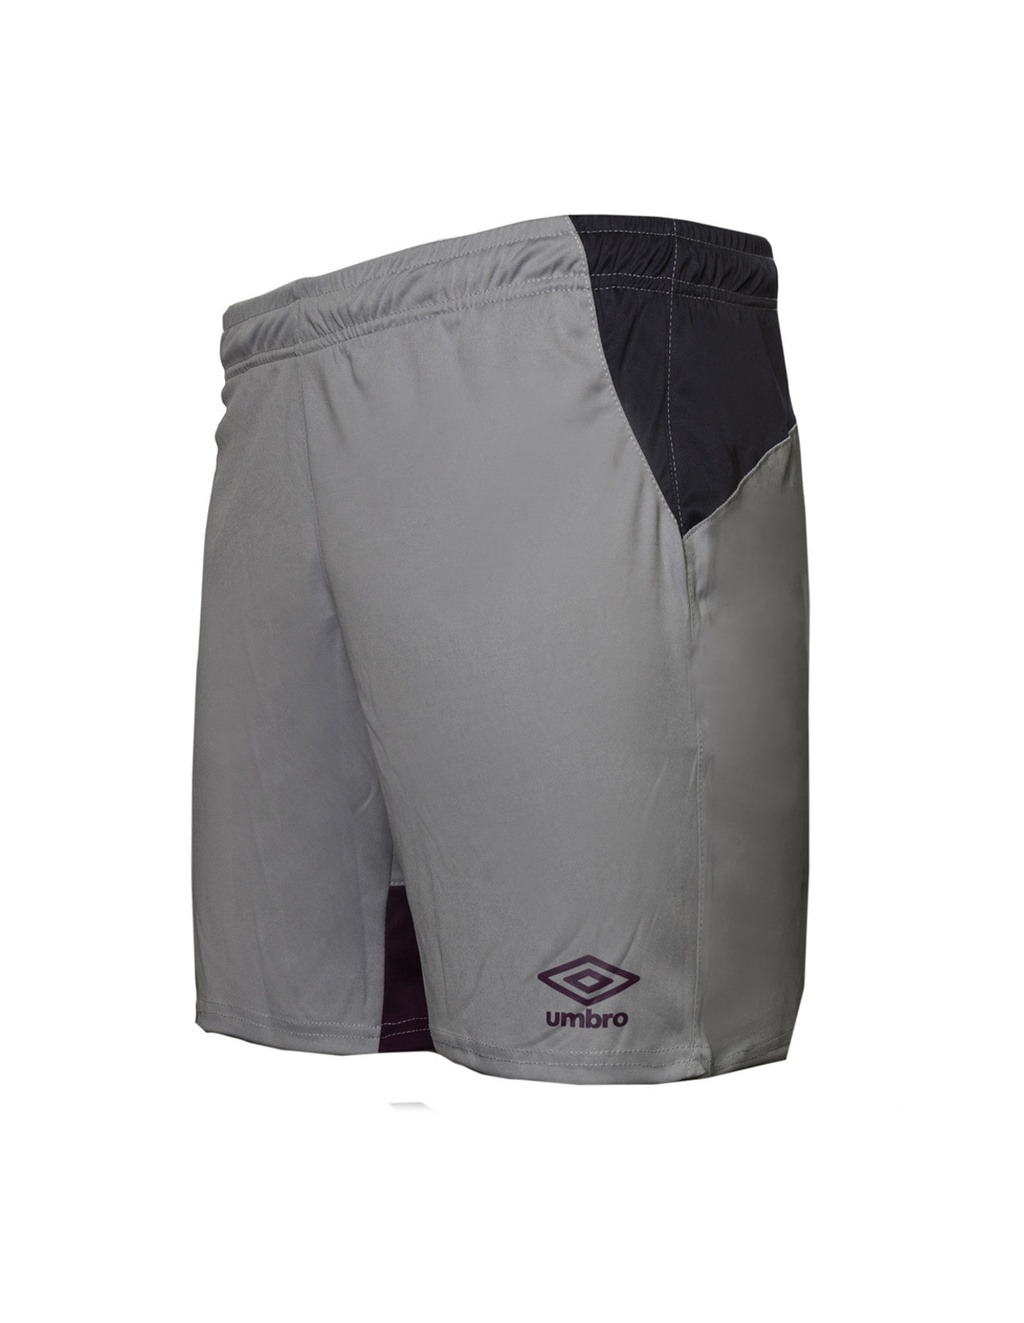 Talla S UMBRO Short Core Power-Pantalón Corto de fútbol para Hombre Color Negro 